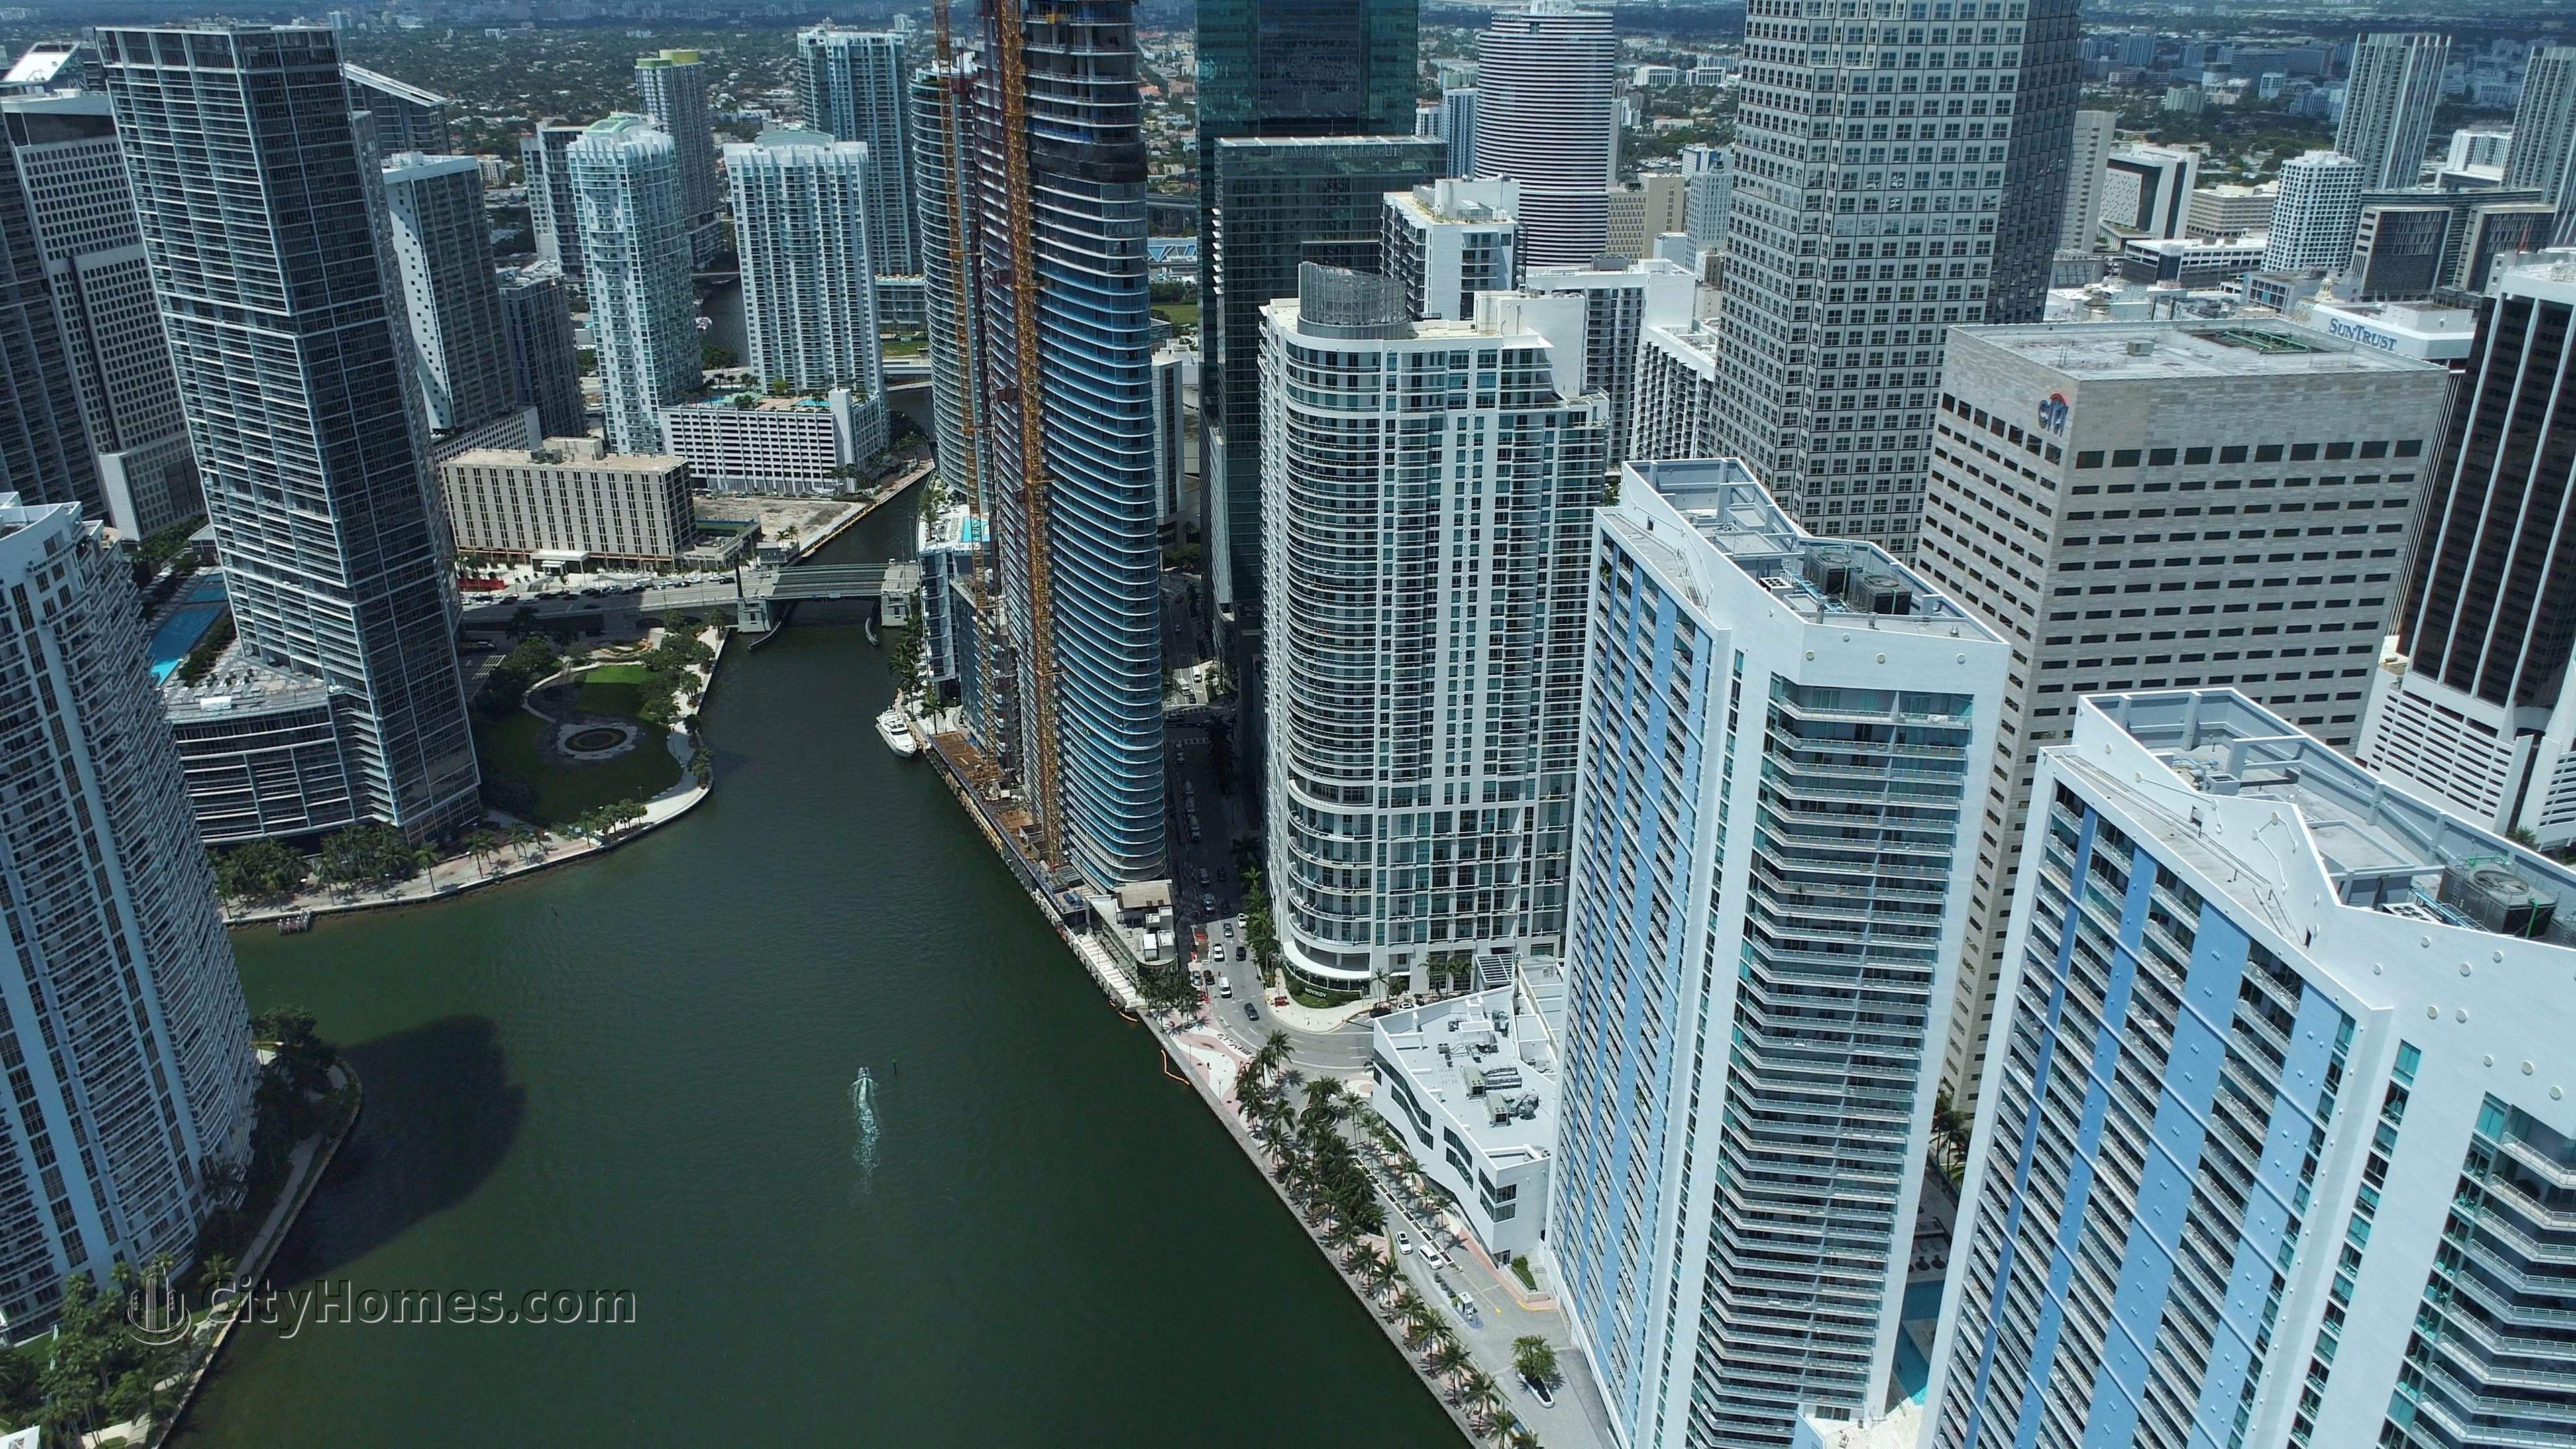 5. One Miami Gebäude bei 325 And 335 S Biscayne Blvd, Miami, FL 33131